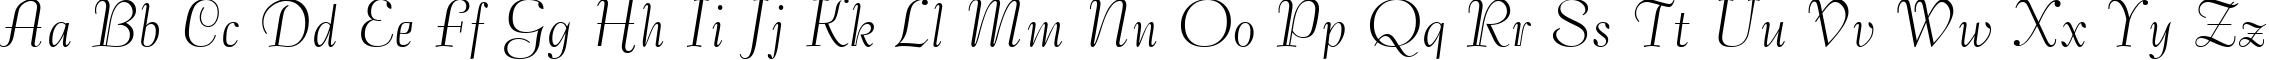 Пример написания английского алфавита шрифтом Bernhard Tango BT